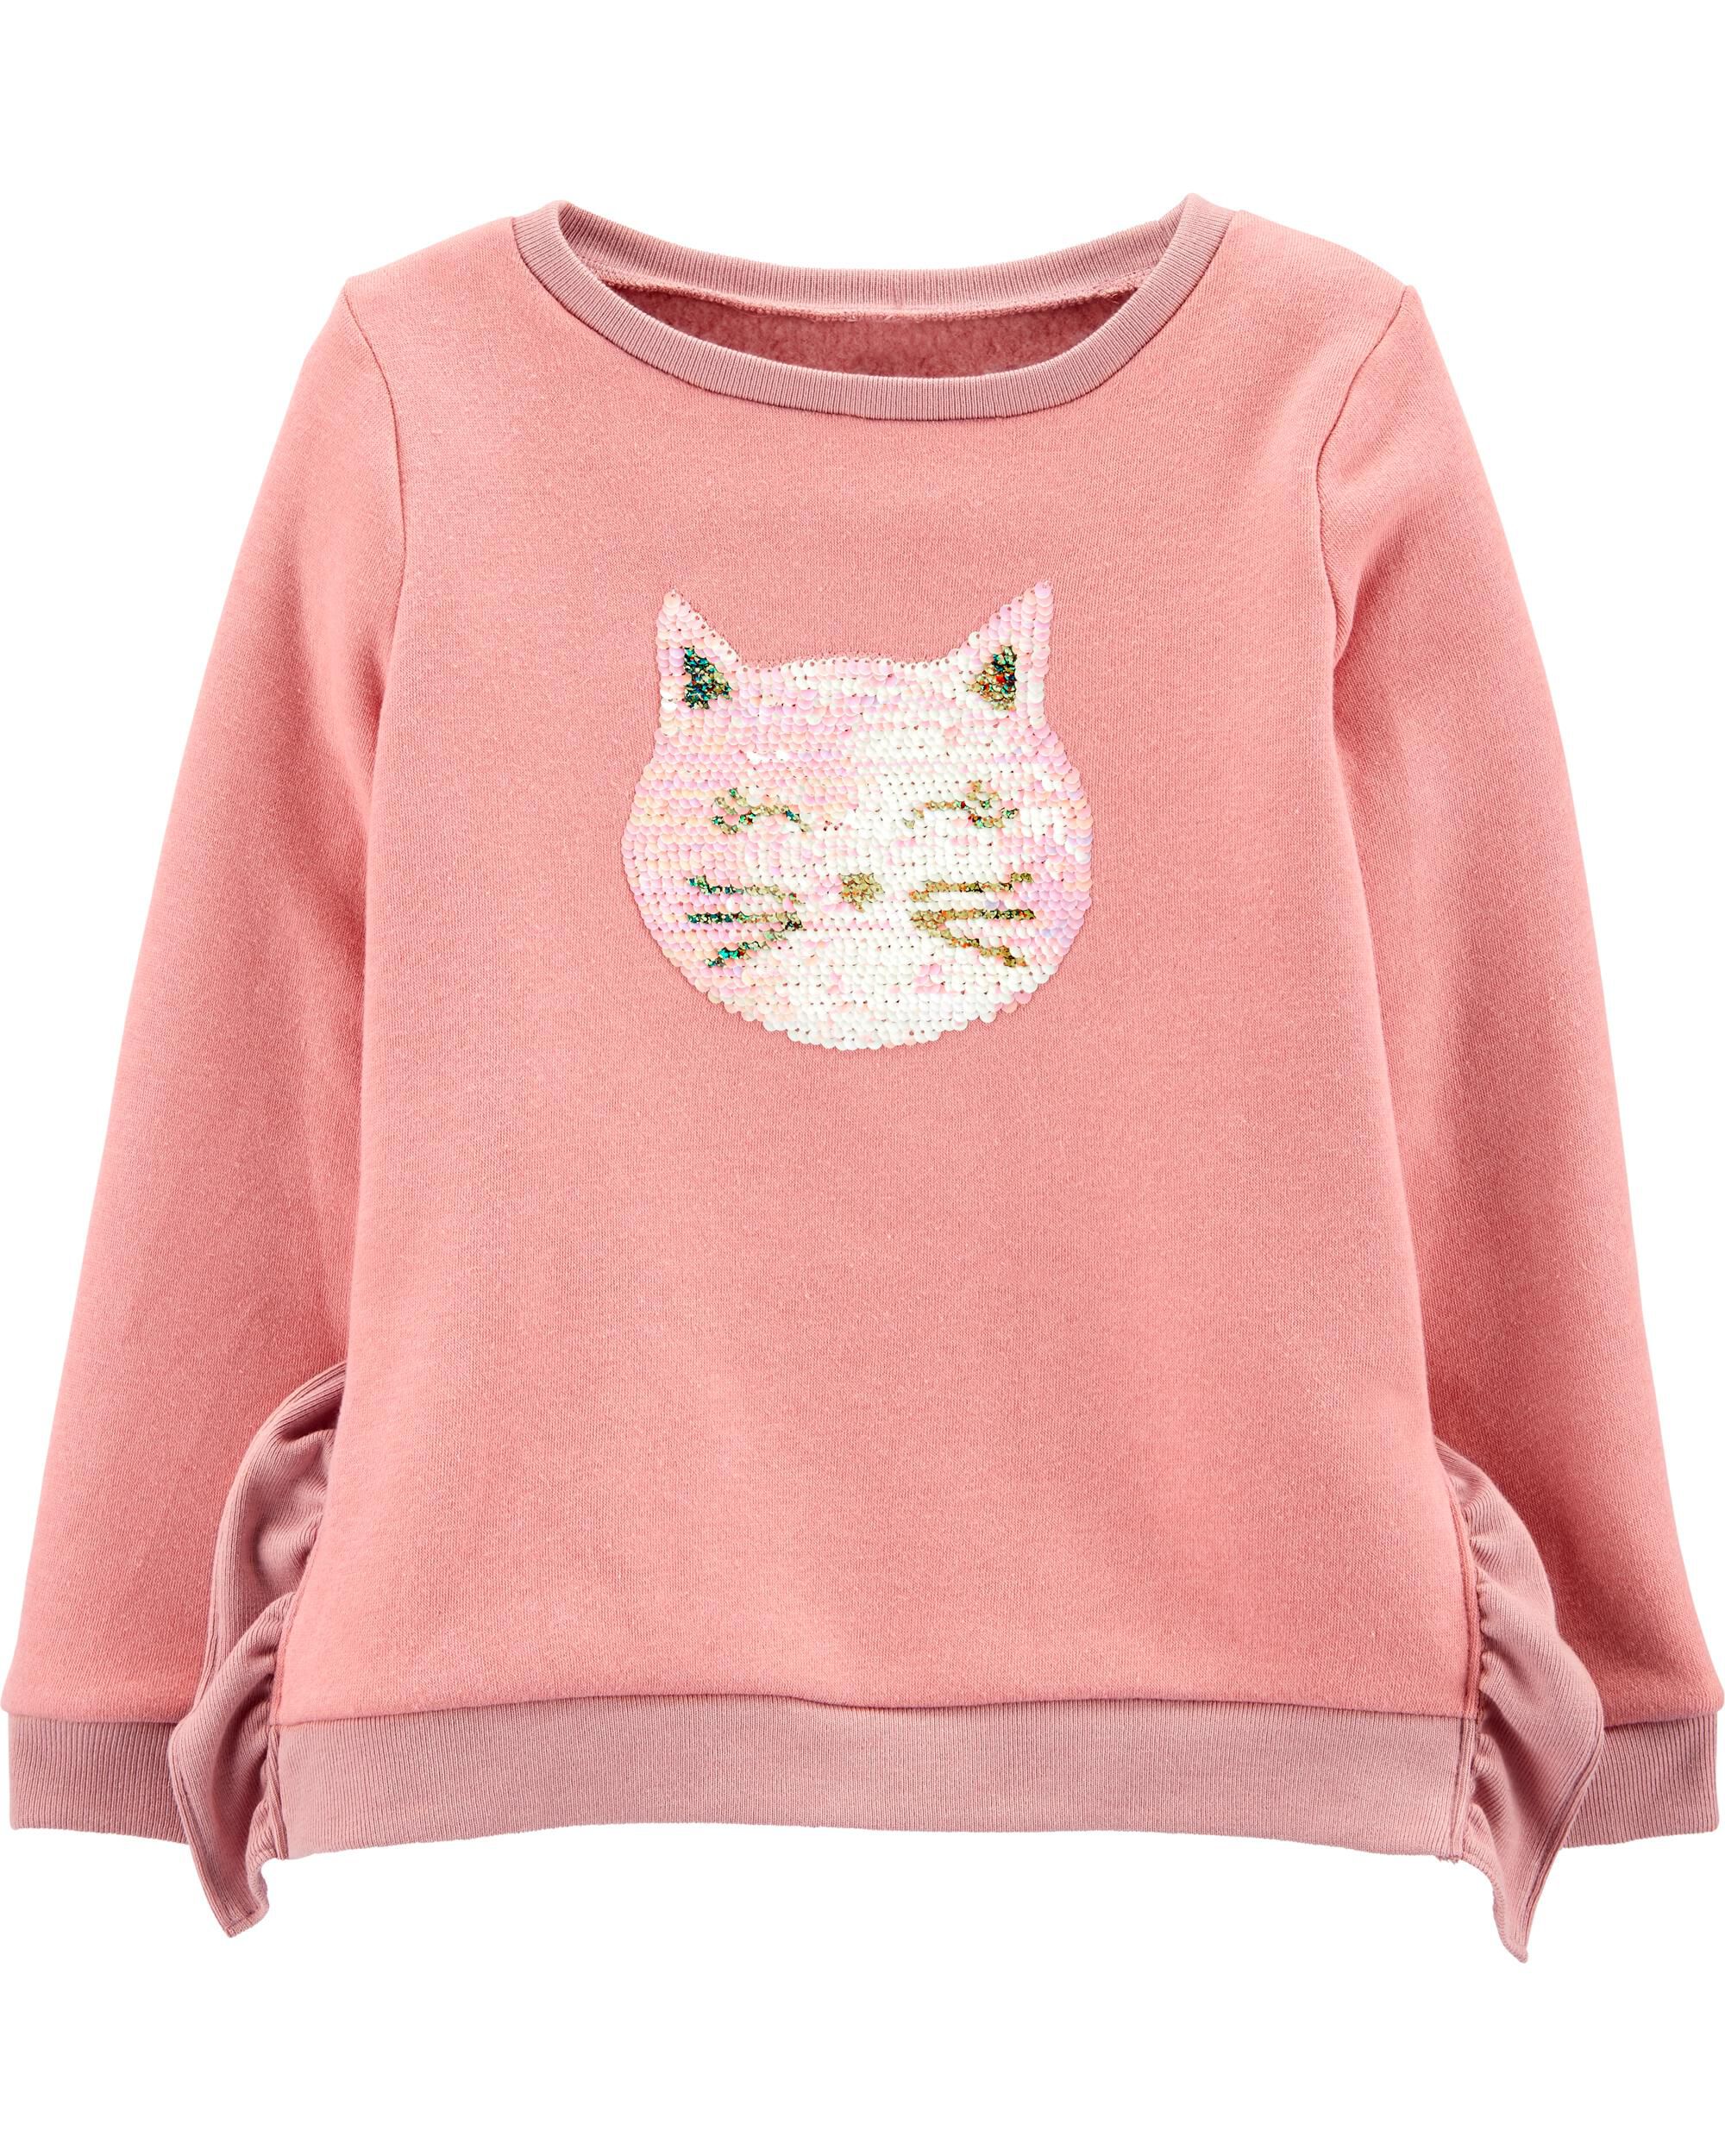  *CLEARANCE* Glitter Flip Sequin Cat Fleece Sweatshirt 